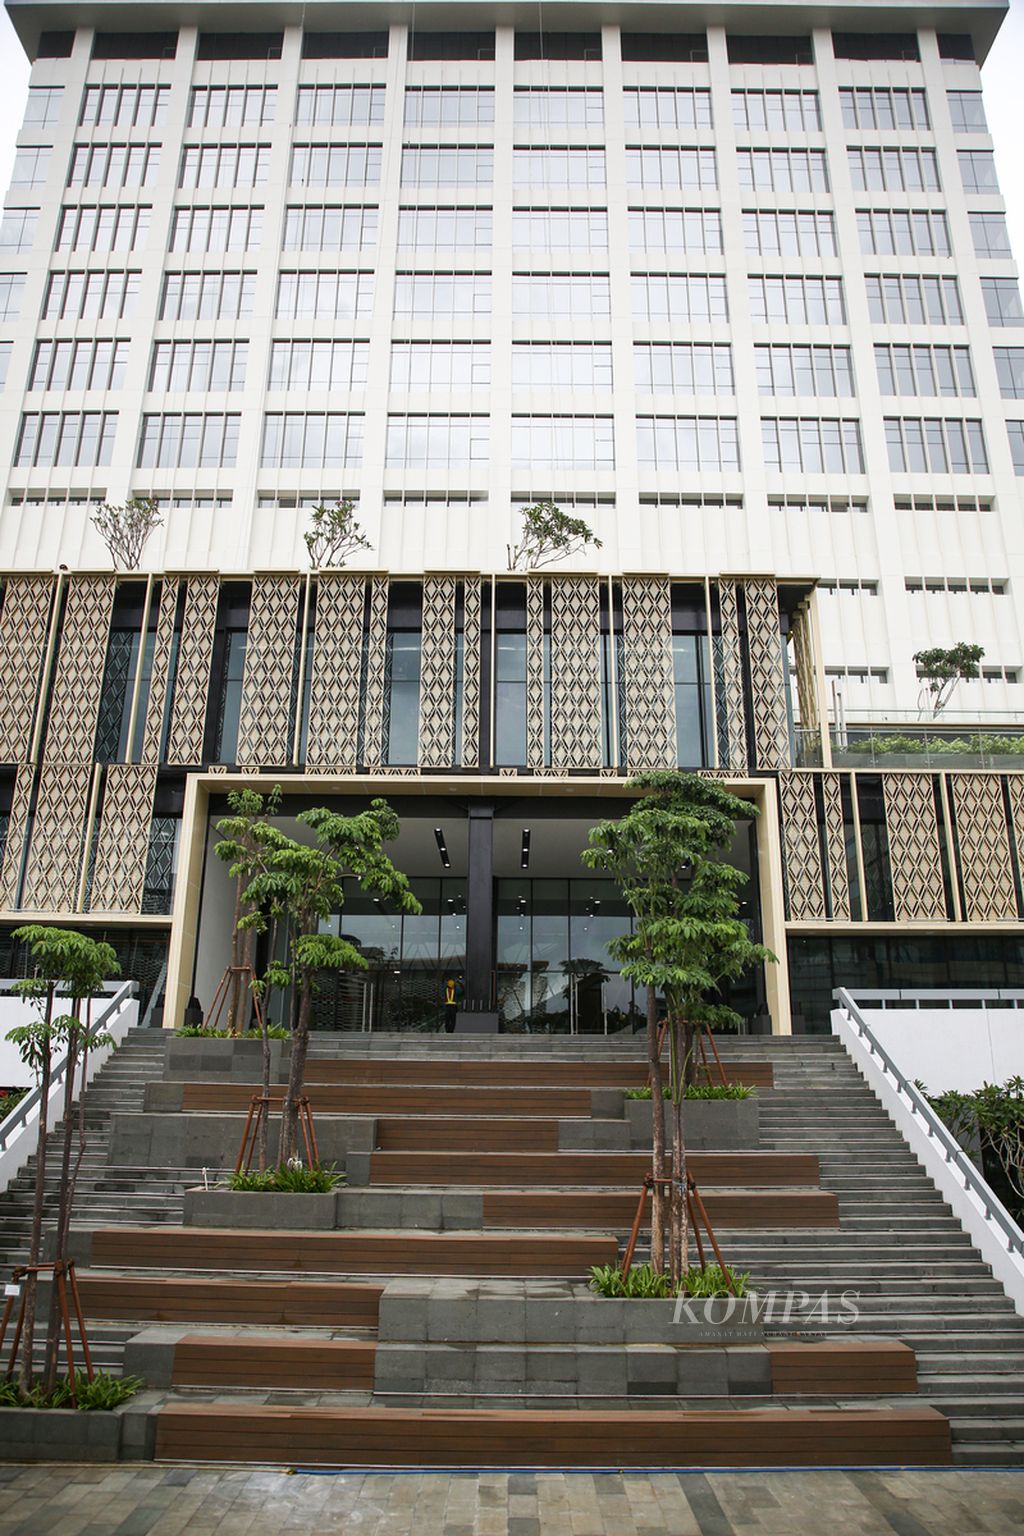 Bagian depan dari proyek renovasi Gedung Sarinah, Jakarta Pusat, dengan penampakan wajah barunya, Minggu (16/1/2022). Pusat perbelanjaan yang diresmikan pertama kali oleh Presiden RI Soekarno pada 1966 ini menurut rencana rampung direvitalisasi pada Maret 2022.